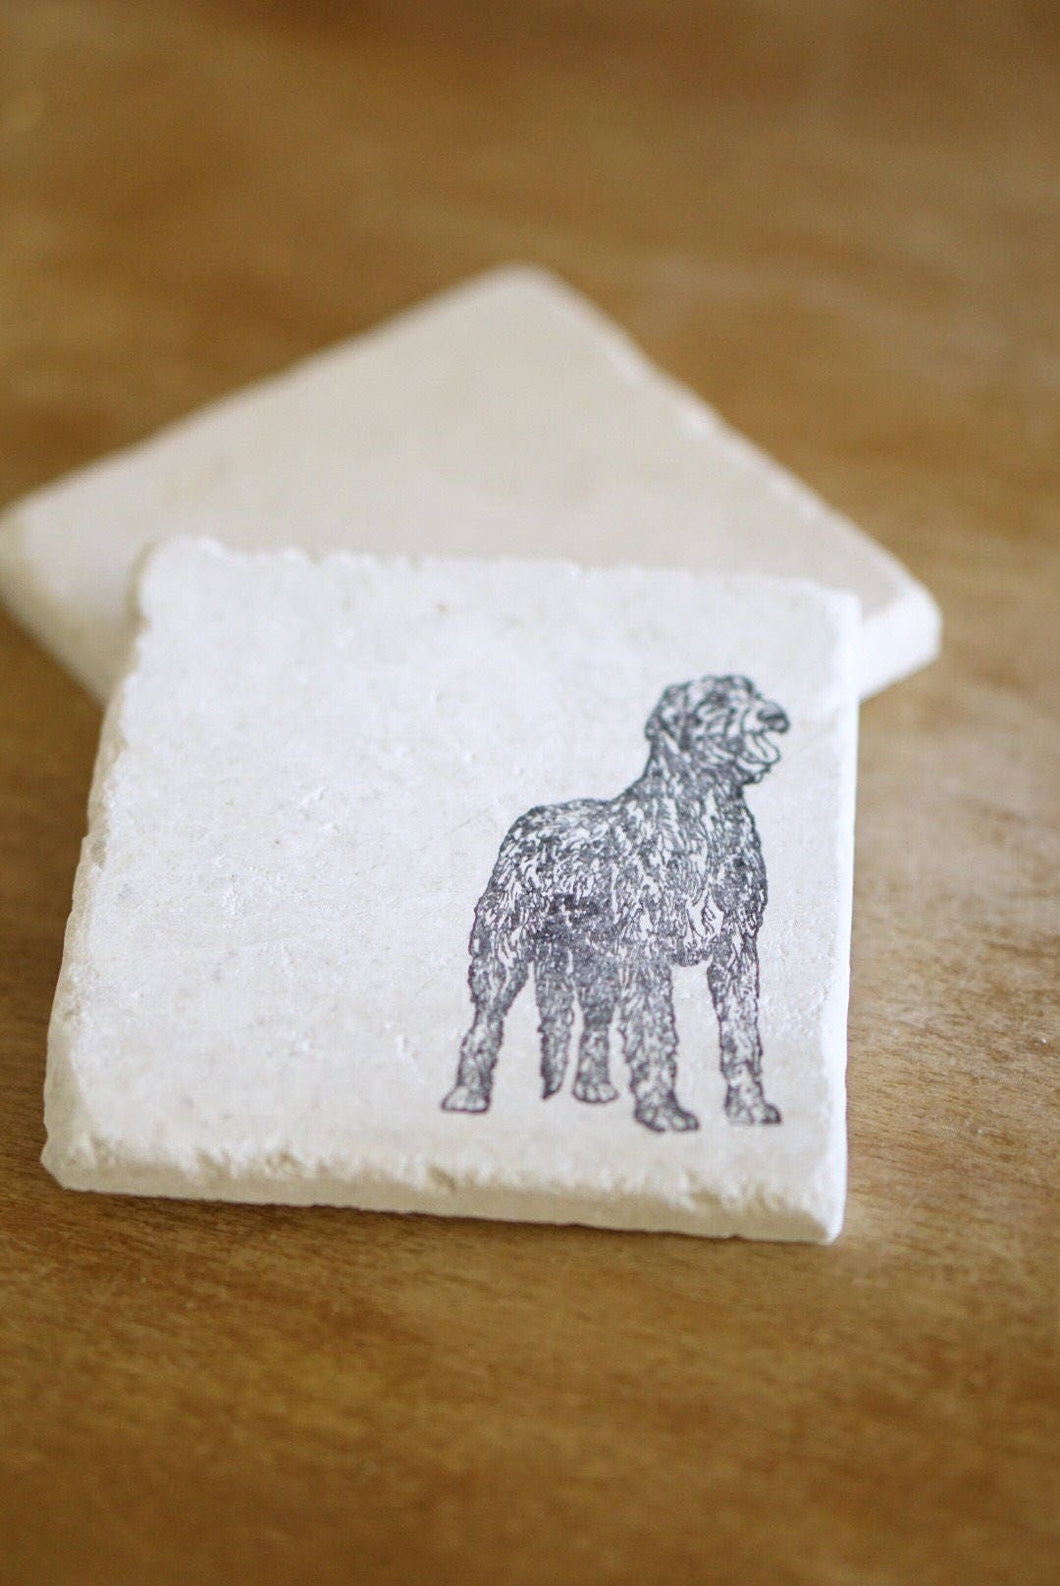 Irish Wolfhound Marble Coasters/ Irish Wolfhound gifts/ marble dog coasters/ marble coasters/ coaster set/ tile coasters/ stone coasters